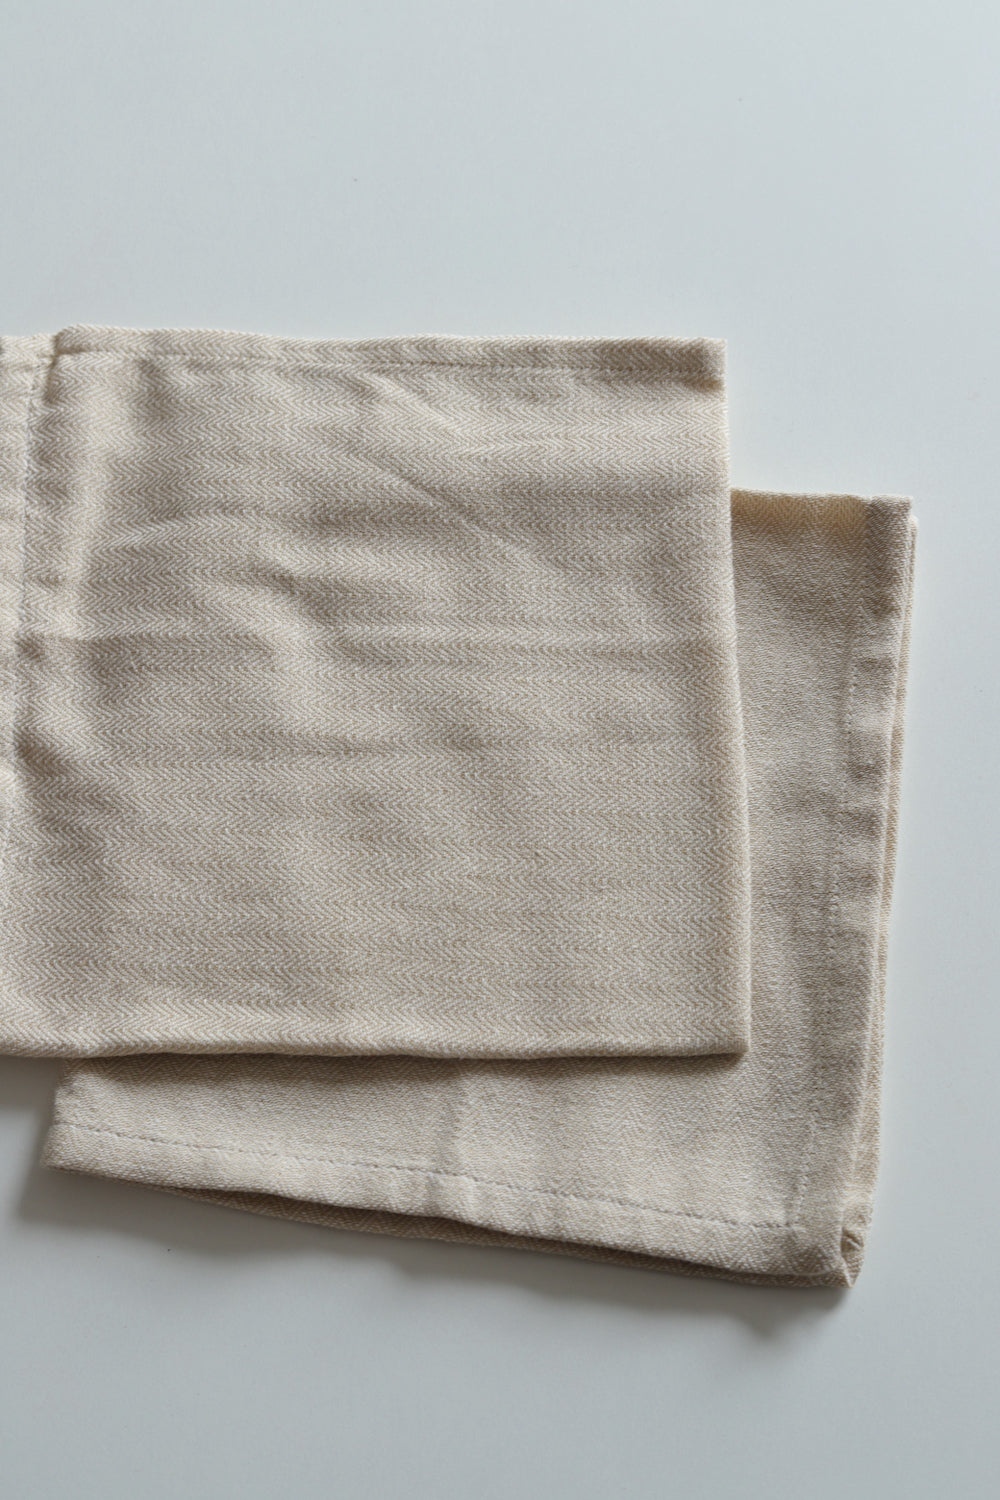 Two herringbone weave neutral napkins